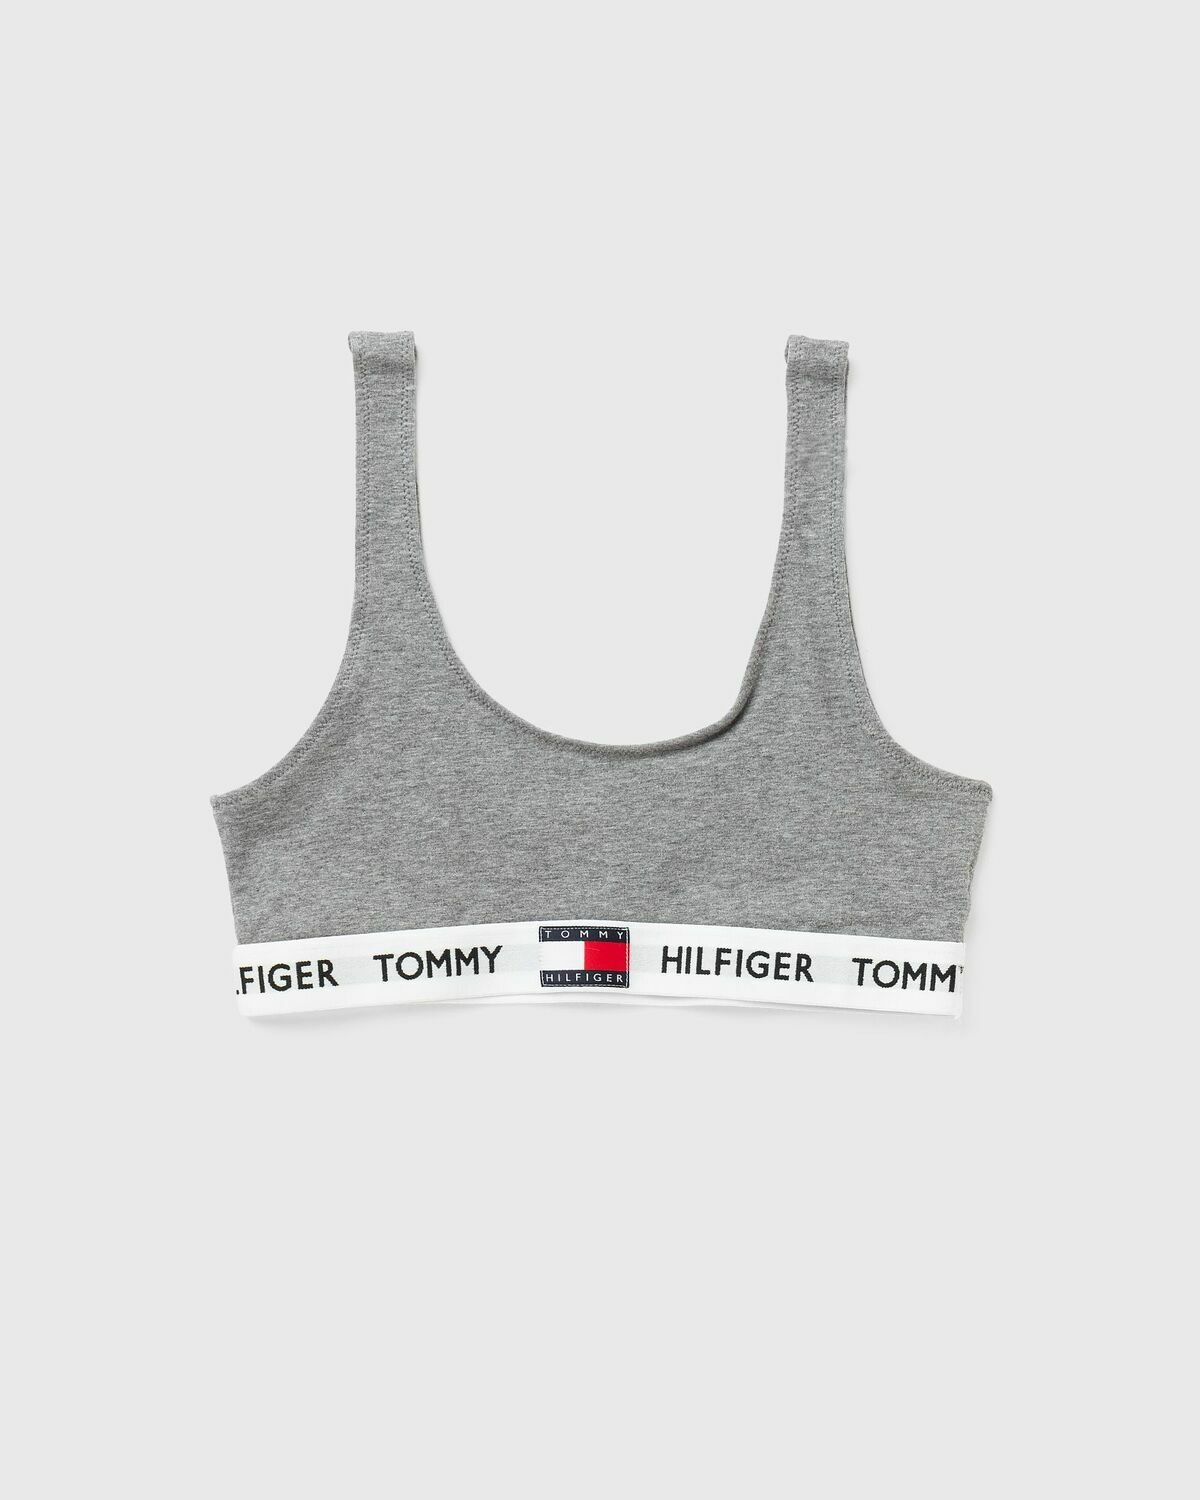 Tommy Hilfiger Girls Crop Bras Bralettes Medium 8 - 10 2 Pack Logo Red Gray